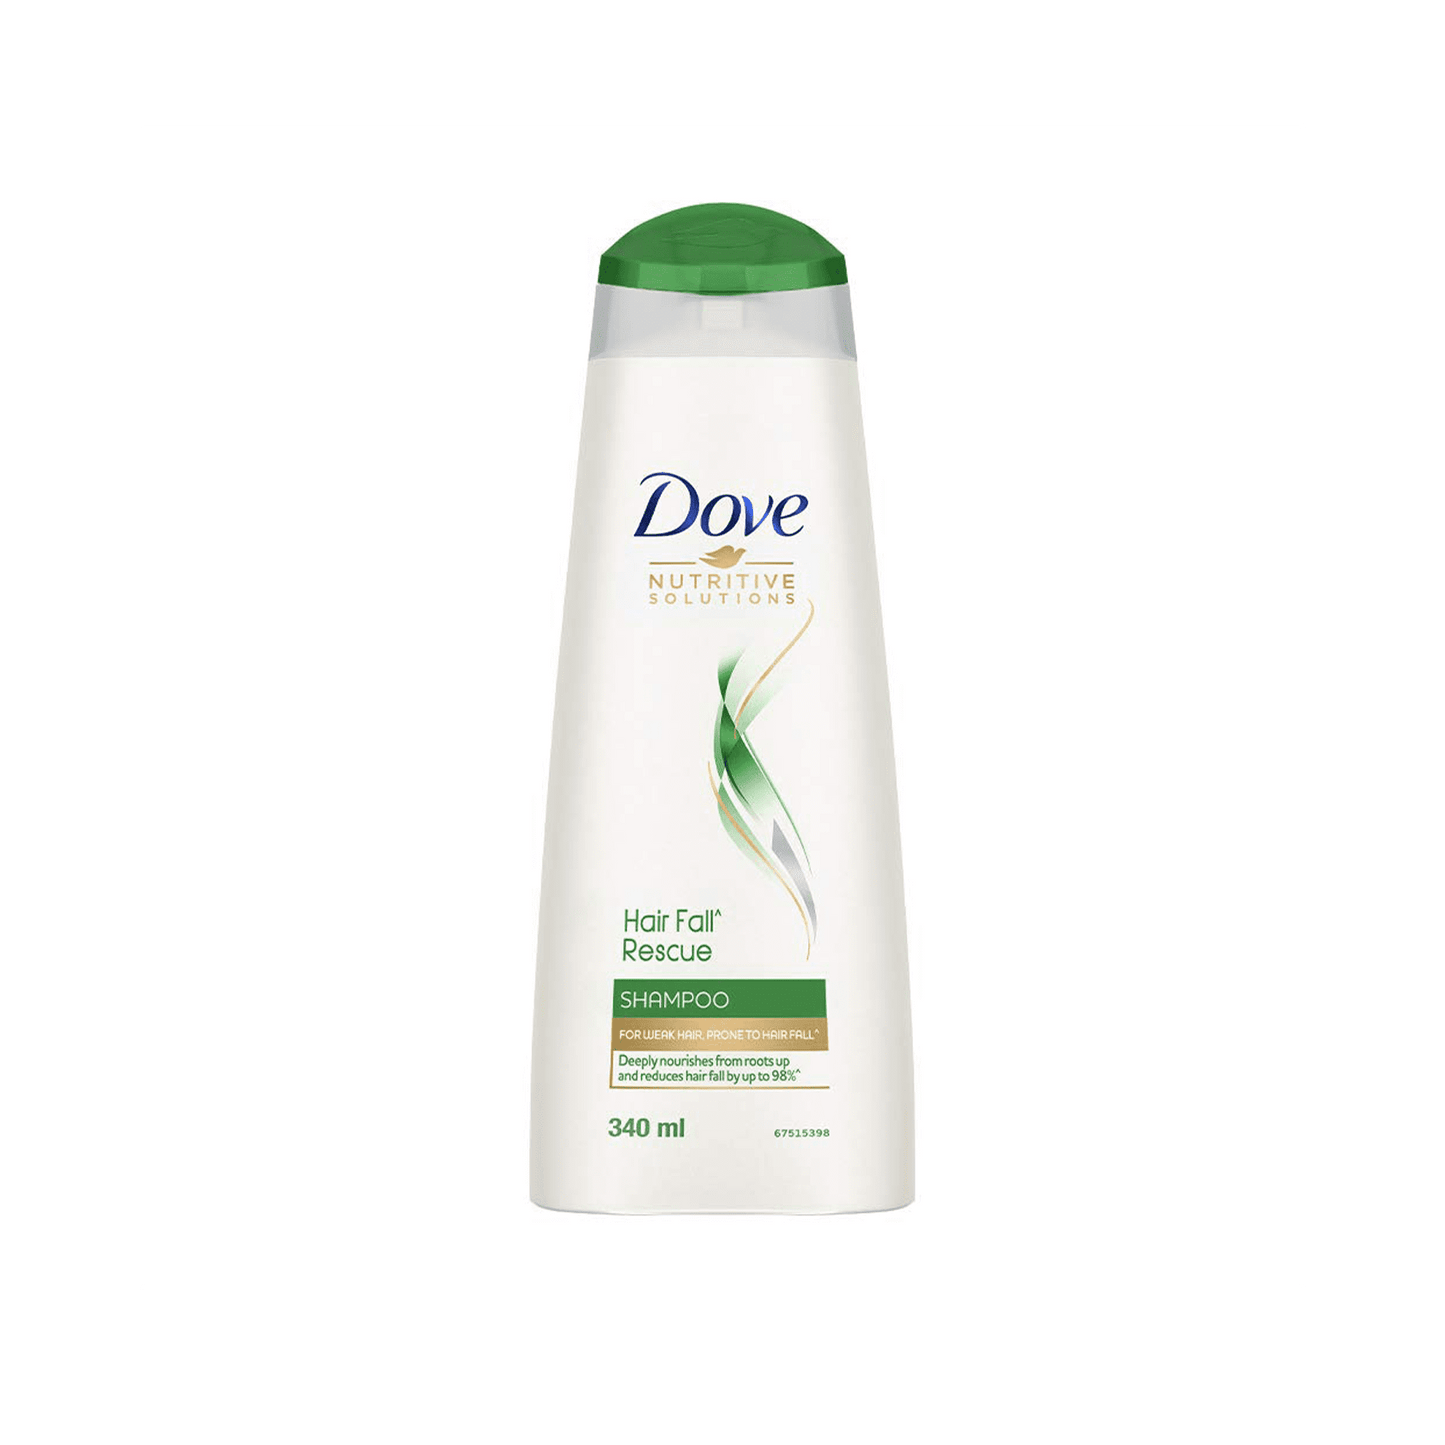 Dove Hairfall Rescue Shampoo.